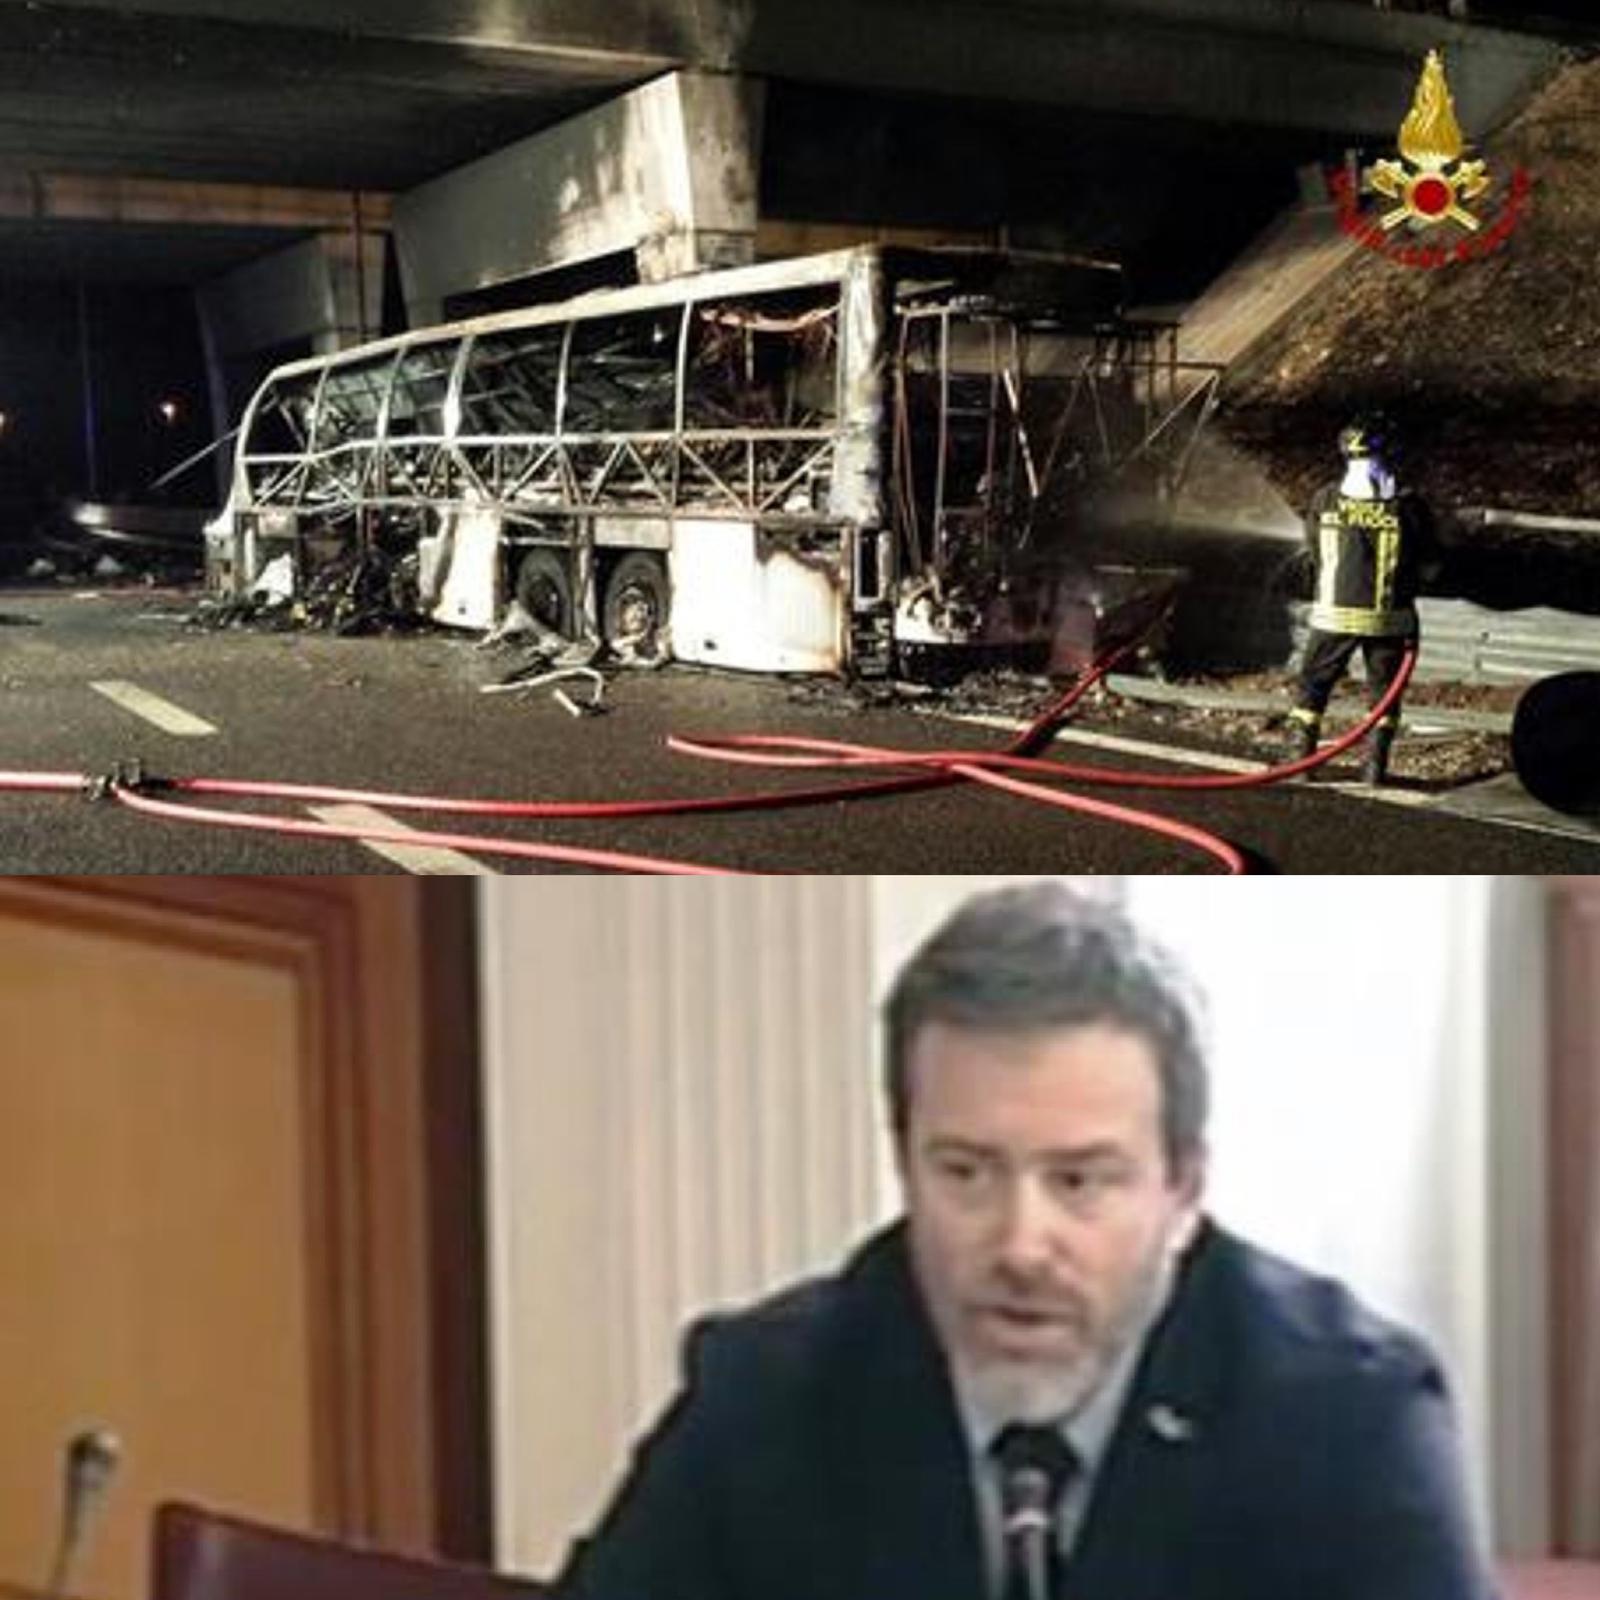 Strage bus Ungherese, rinviata udienza. Alberto Pallotti (A.I.F.V.S. Onlus): “Noi parte civile, colpevoli ricevano le giuste pene”